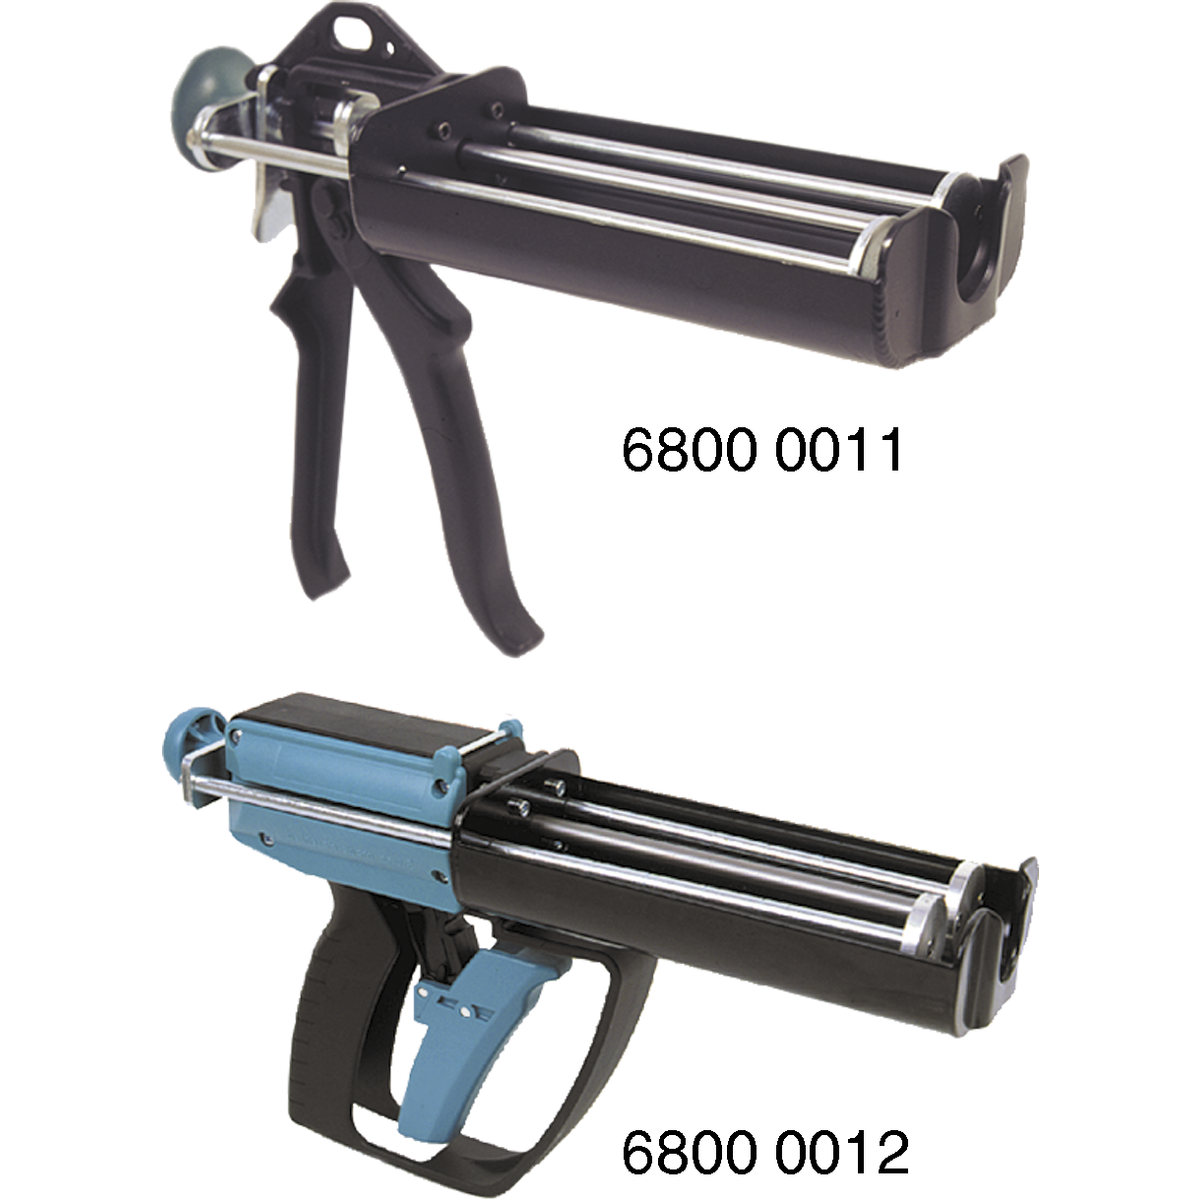 Doppel Kartuschenpistole Pistole Handwerk Hobby Industrie Neu Förch 66604209 